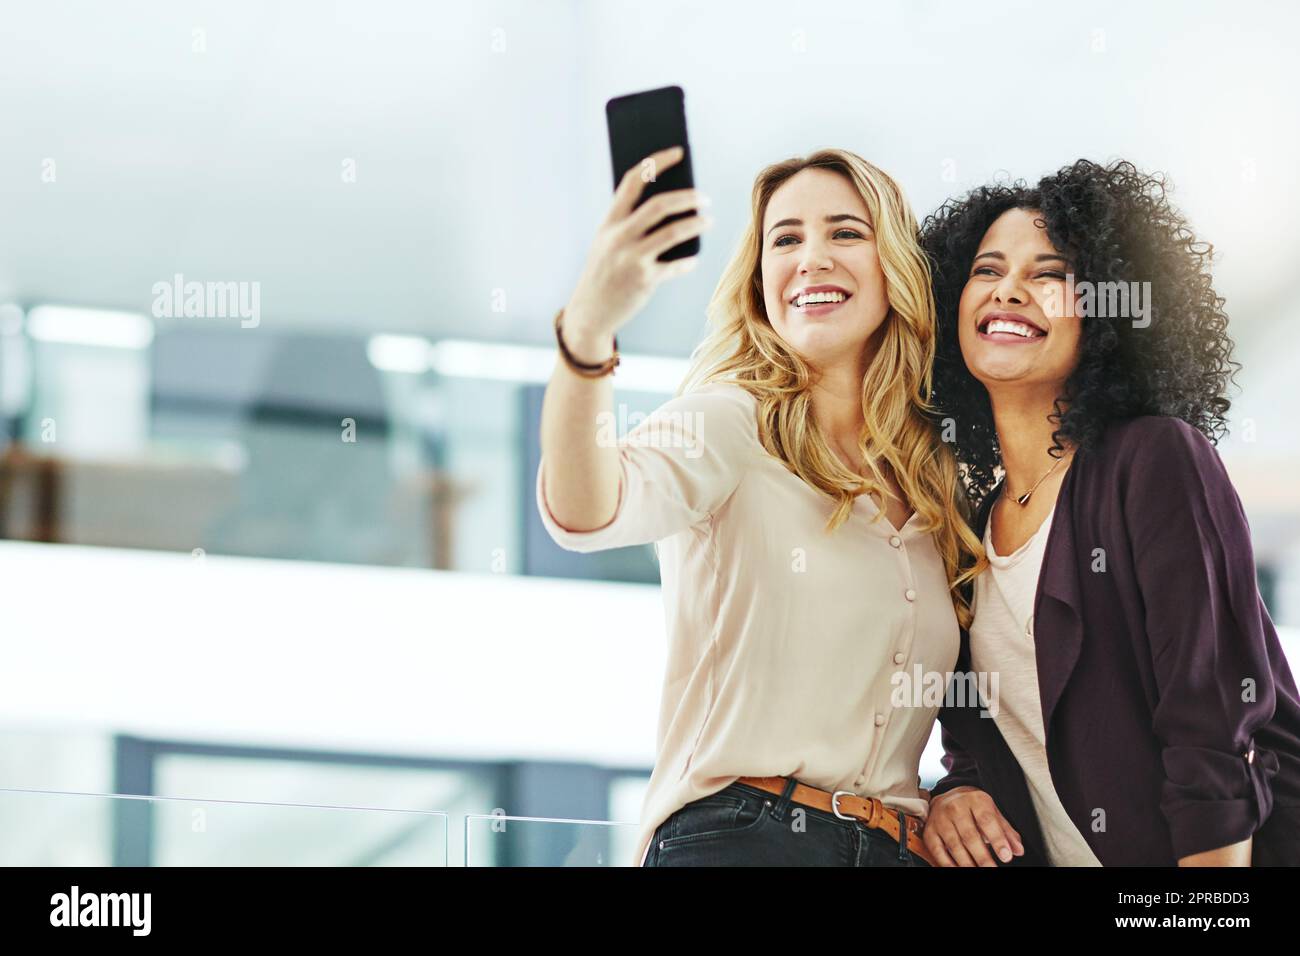 Donne felici, sorridenti e allegri che scattano selfie con un telefono mentre si legano, si divertono e si spensierano al lavoro. Colleghi diversi, gioiosi e positivi che scattano foto per i social media Foto Stock